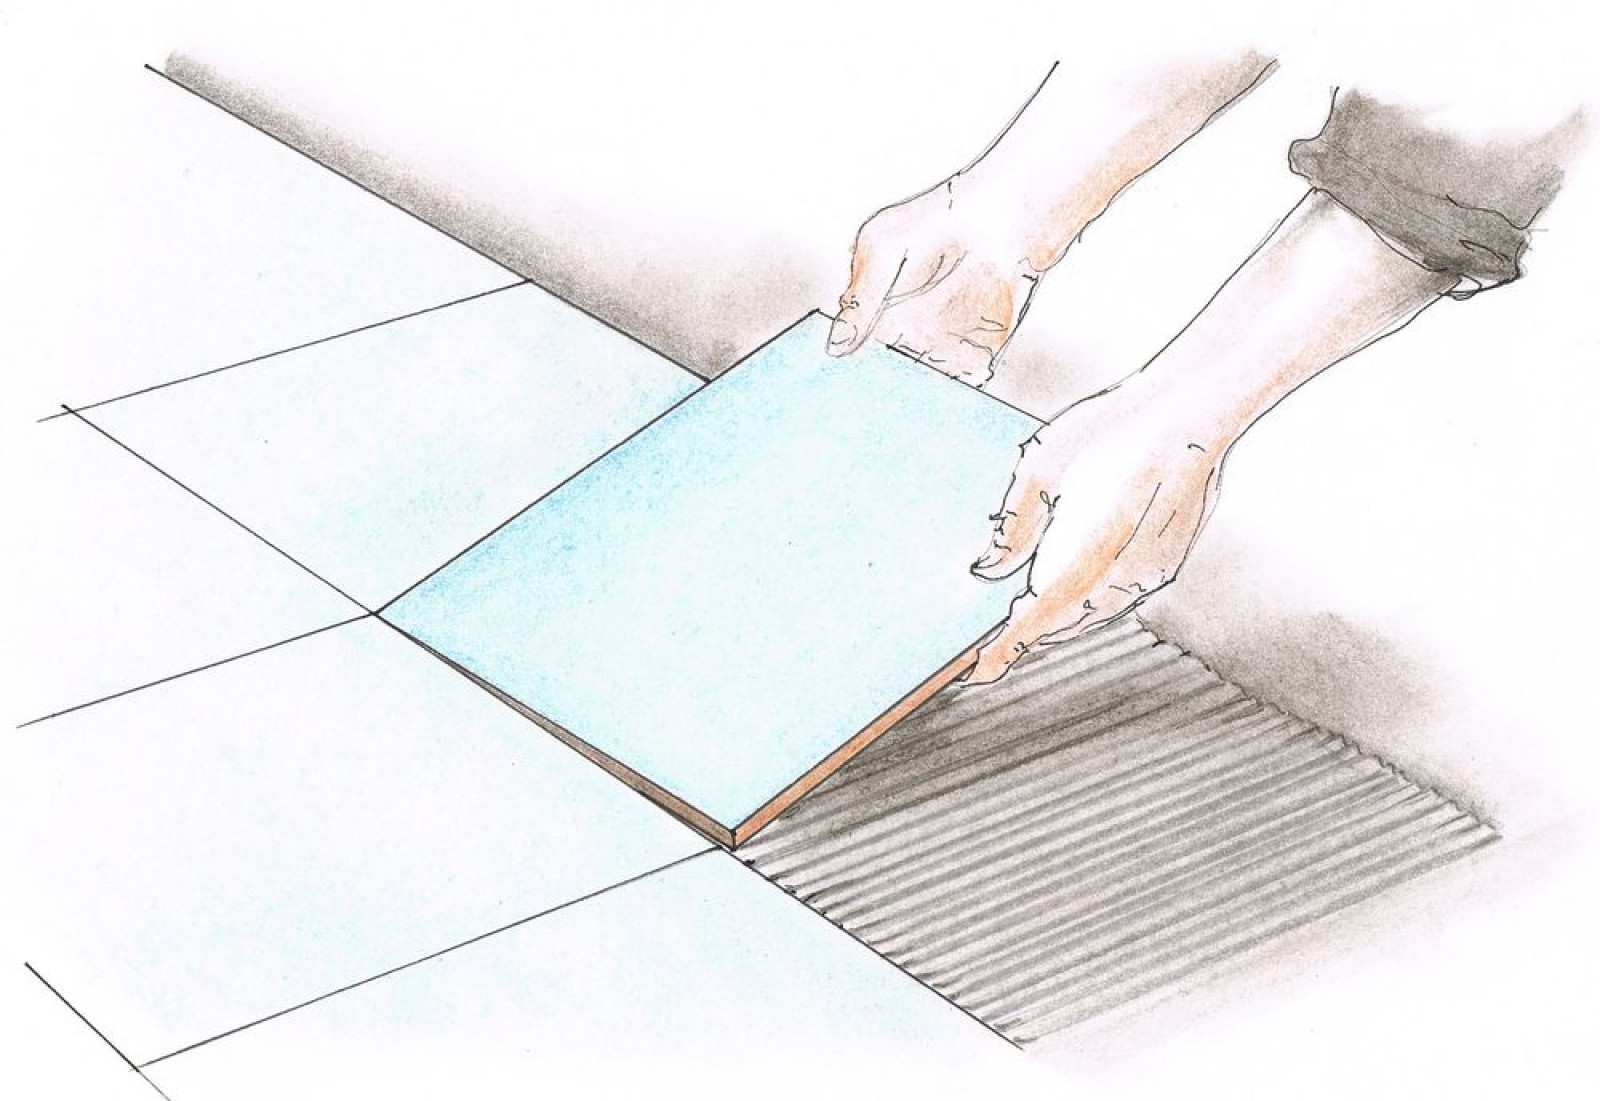 Укладка кафельной плитки своими руками на пол: Как положить плитку на пол самостоятельно без опыта